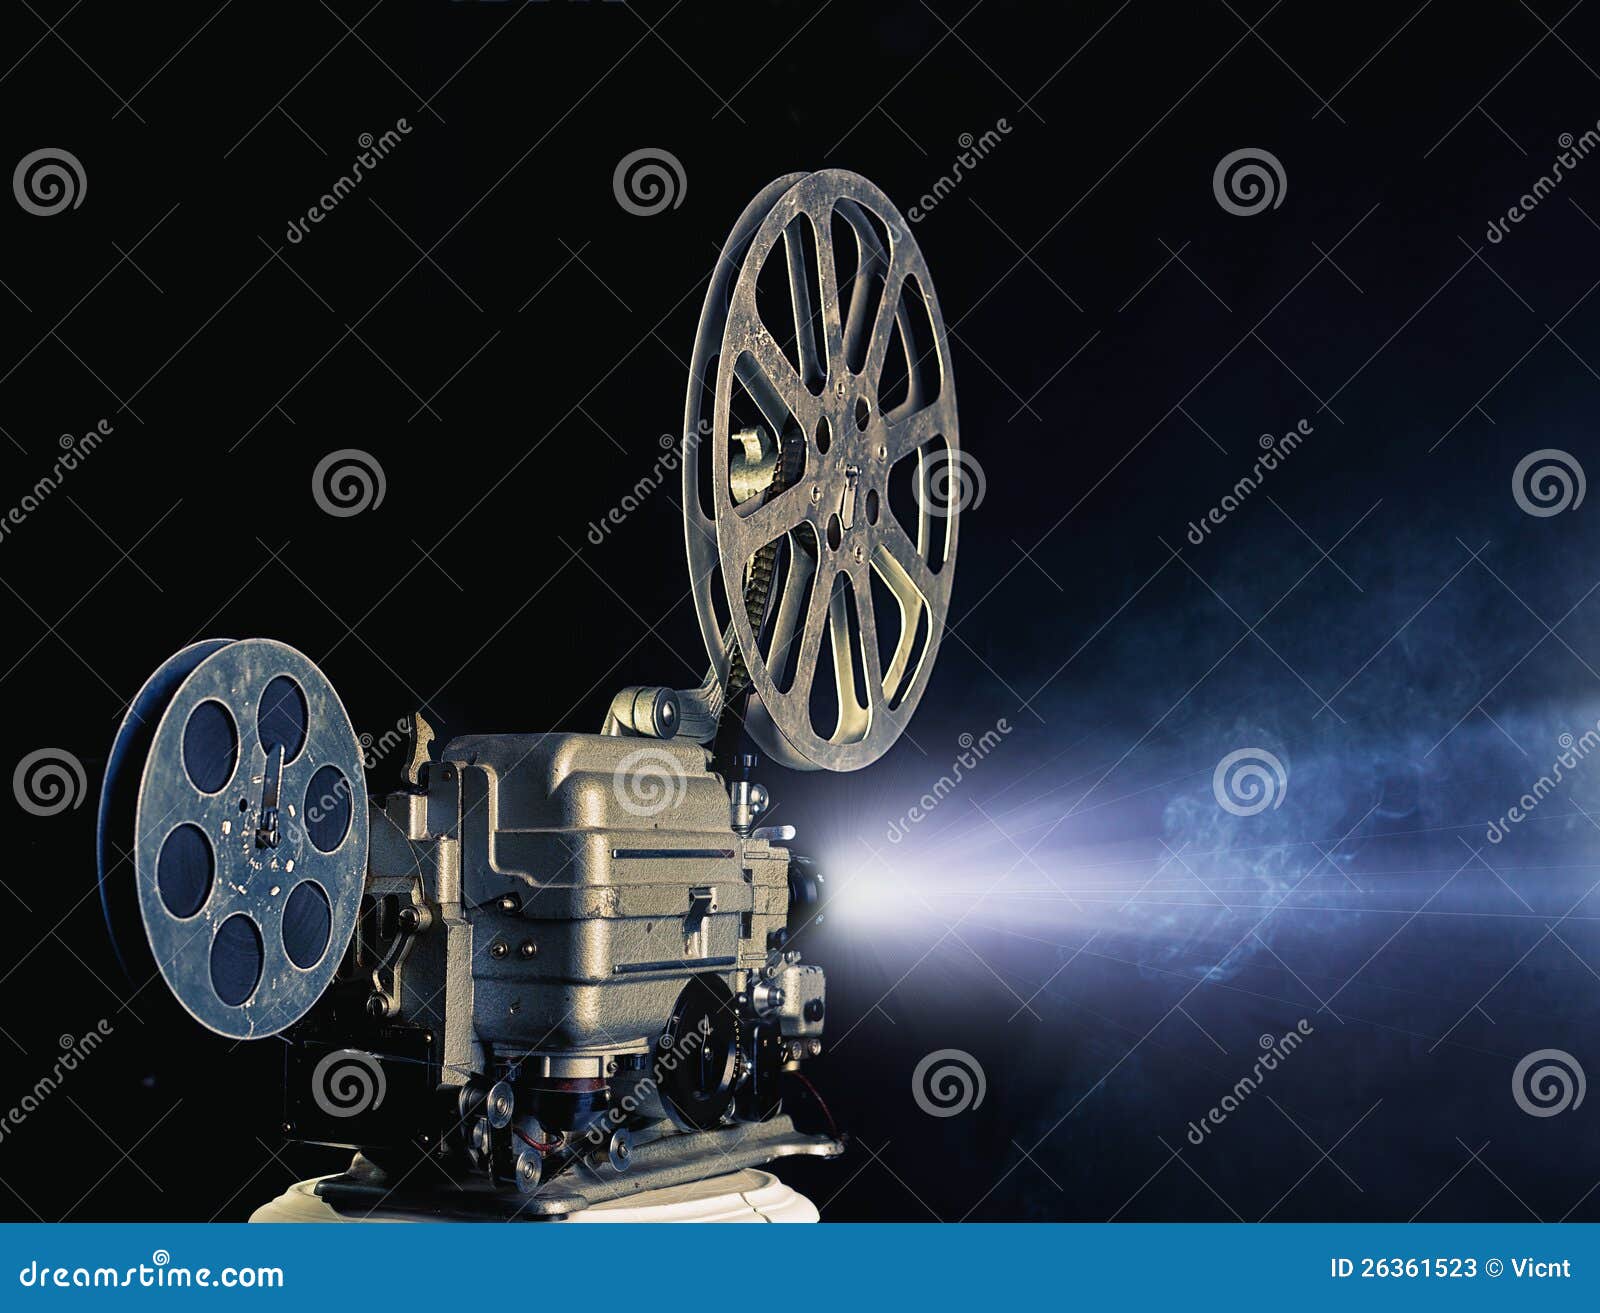 cinema projector